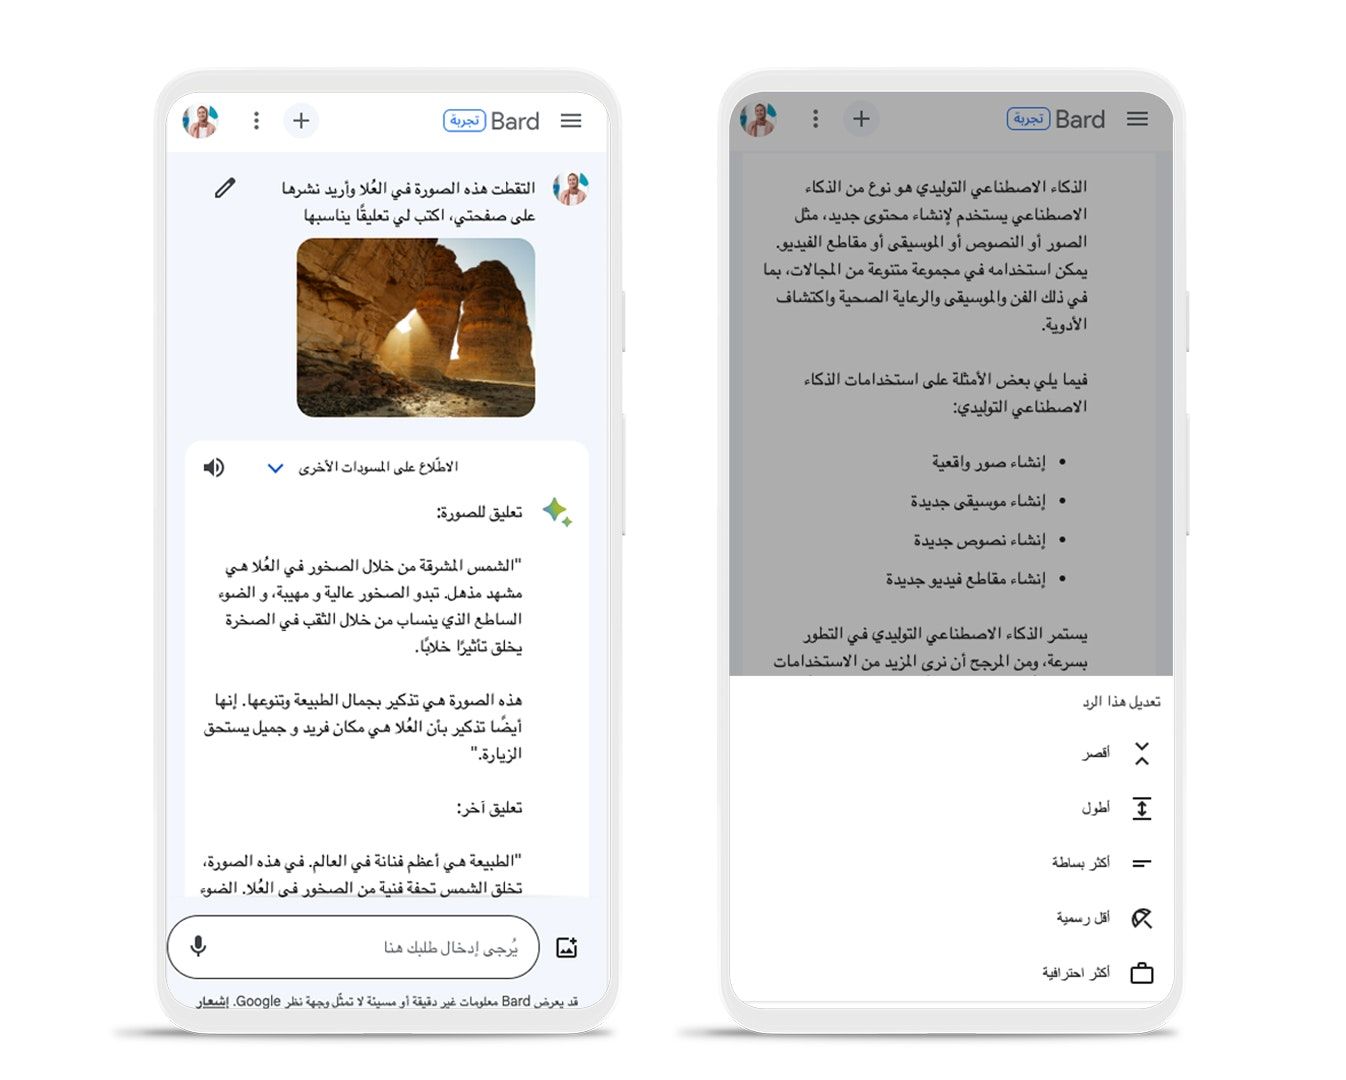 مزايا جوجل بارد الجديدة للغة العربية - Google